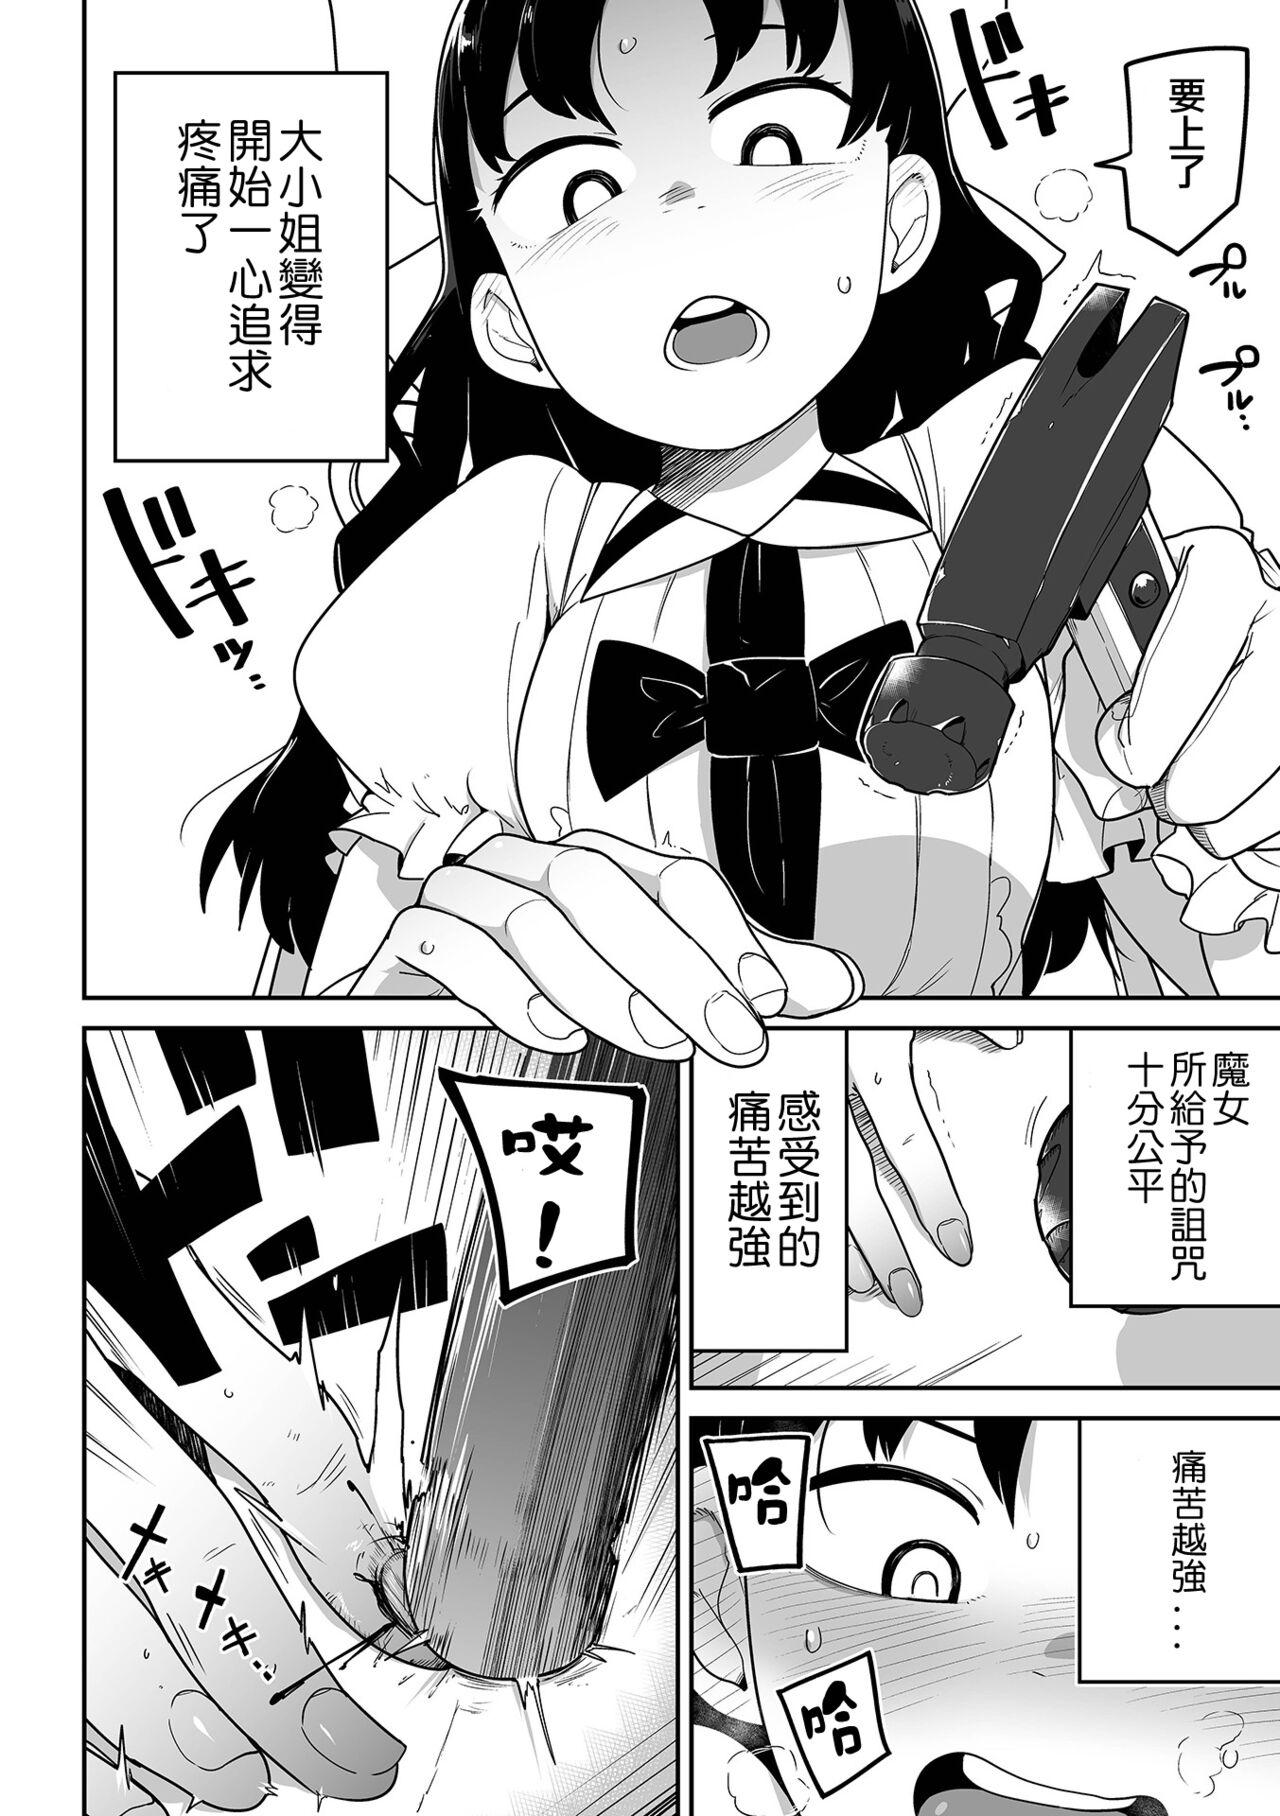 Bunduda Itai no Daisuki Ojou-sam Senki Leather - Page 5